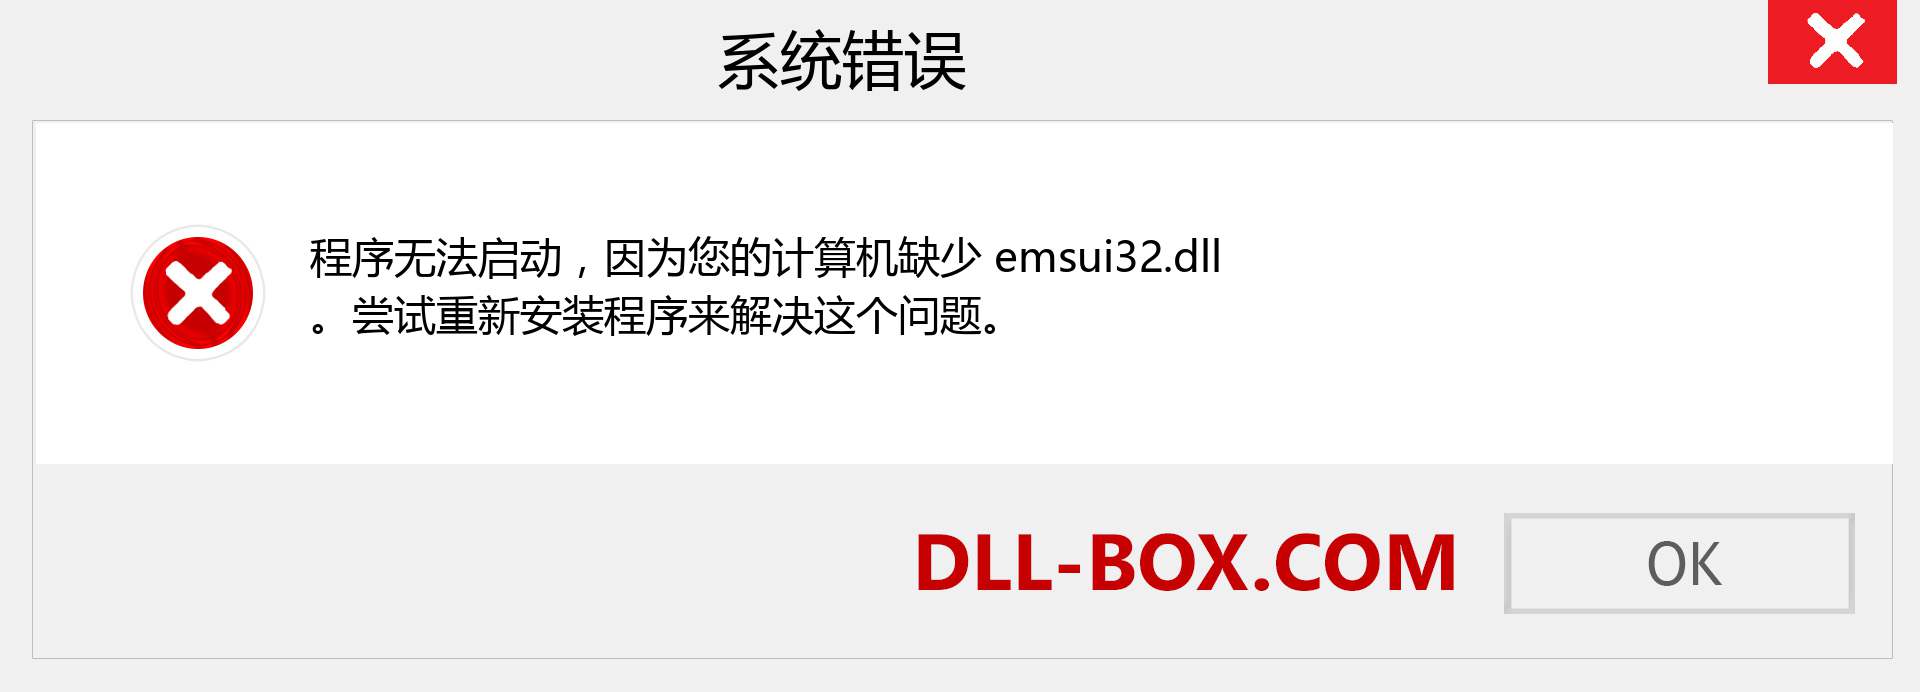 emsui32.dll 文件丢失？。 适用于 Windows 7、8、10 的下载 - 修复 Windows、照片、图像上的 emsui32 dll 丢失错误